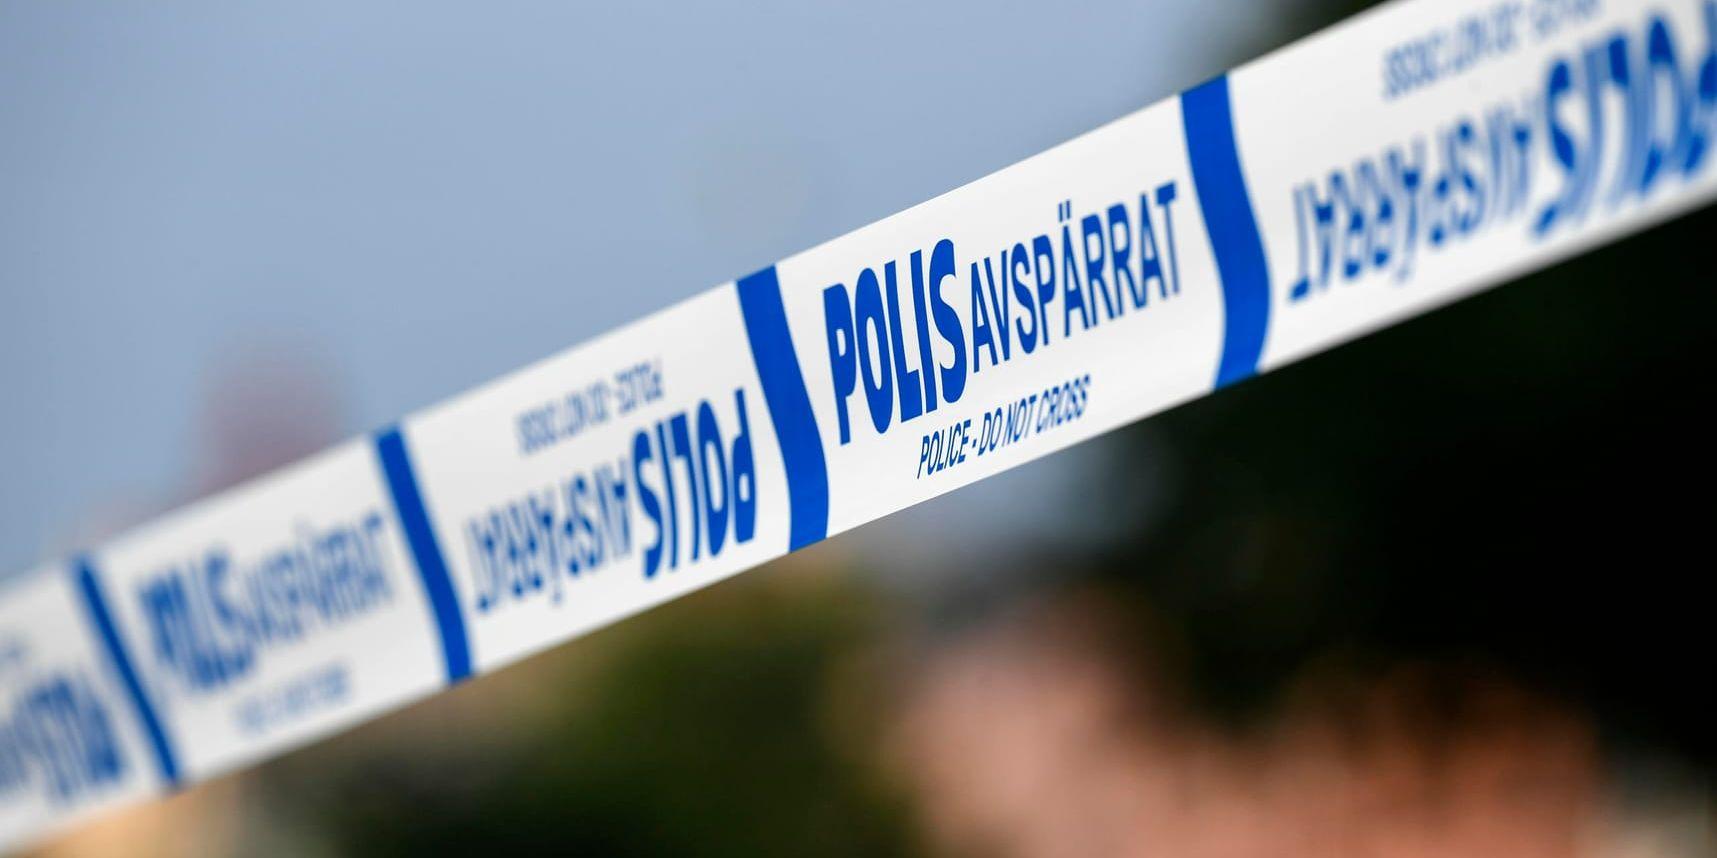 En kvinna i 60-årsåldern har hittats död i en bostad i Uppsala, skriver polisen på sin hemsida. Arkivbild.